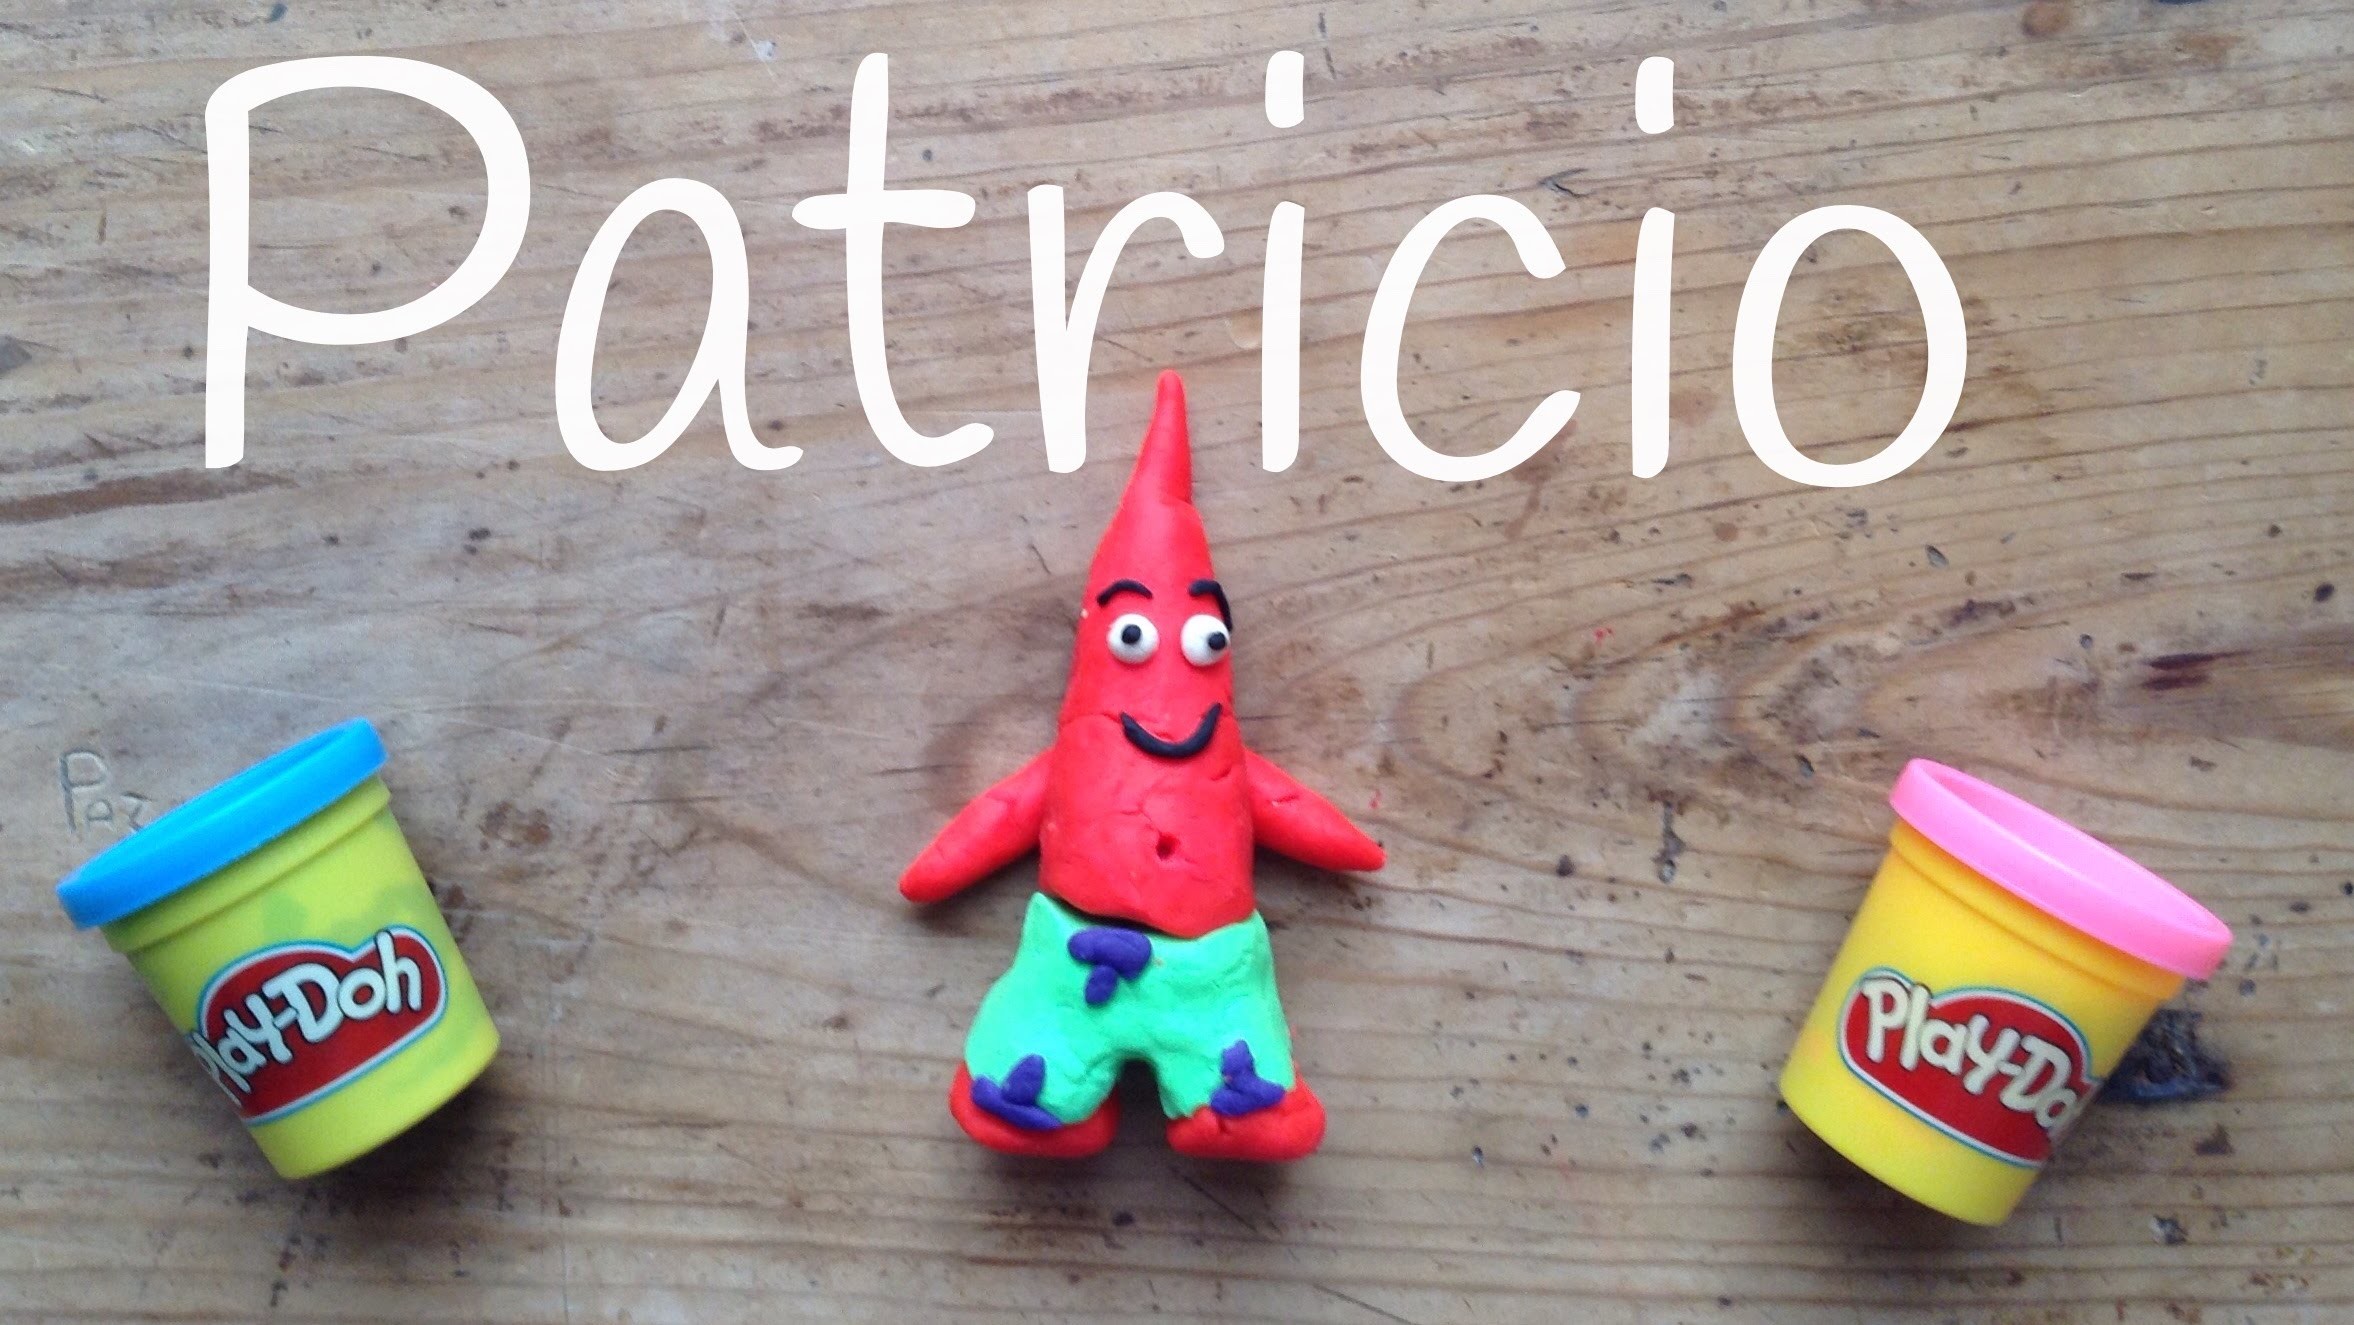 PATRICIO de plastilina PLAY DOH | Play doh de BOB ESPONJA en español